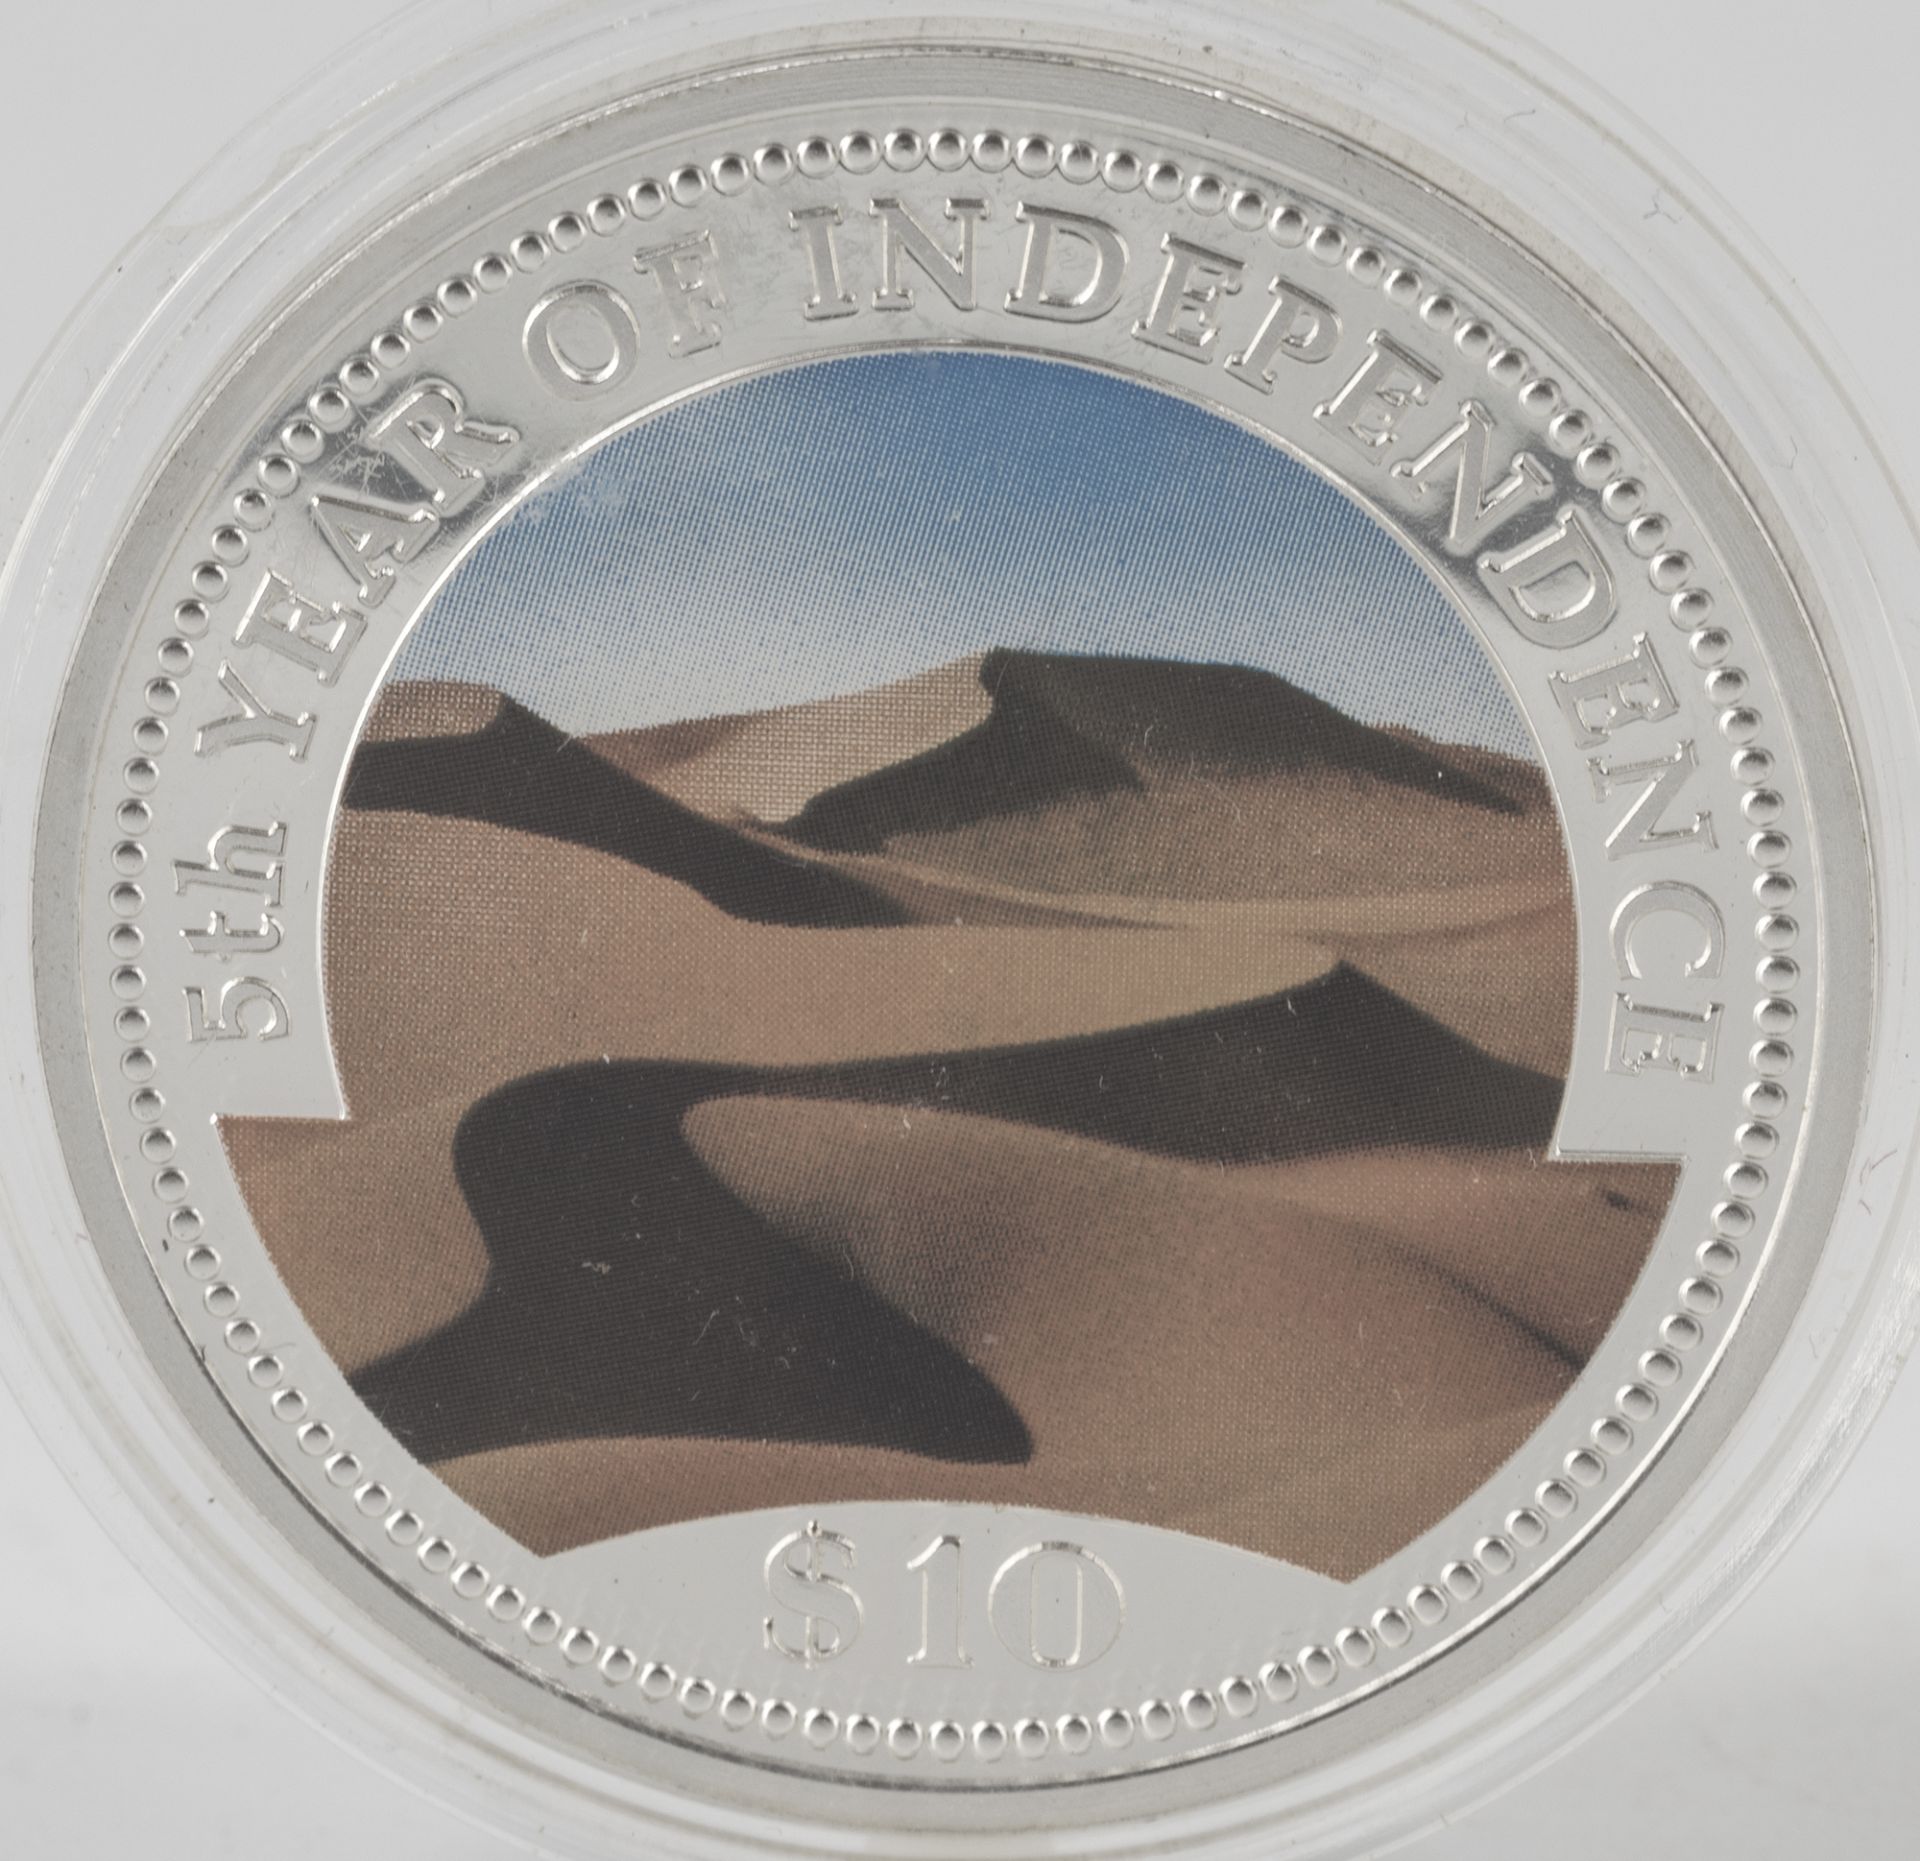 Namibia 1995, $ 10 - Farbmünze. Silber "5. Jahrestag der Unabhängigkeit". Erhaltung: PP.